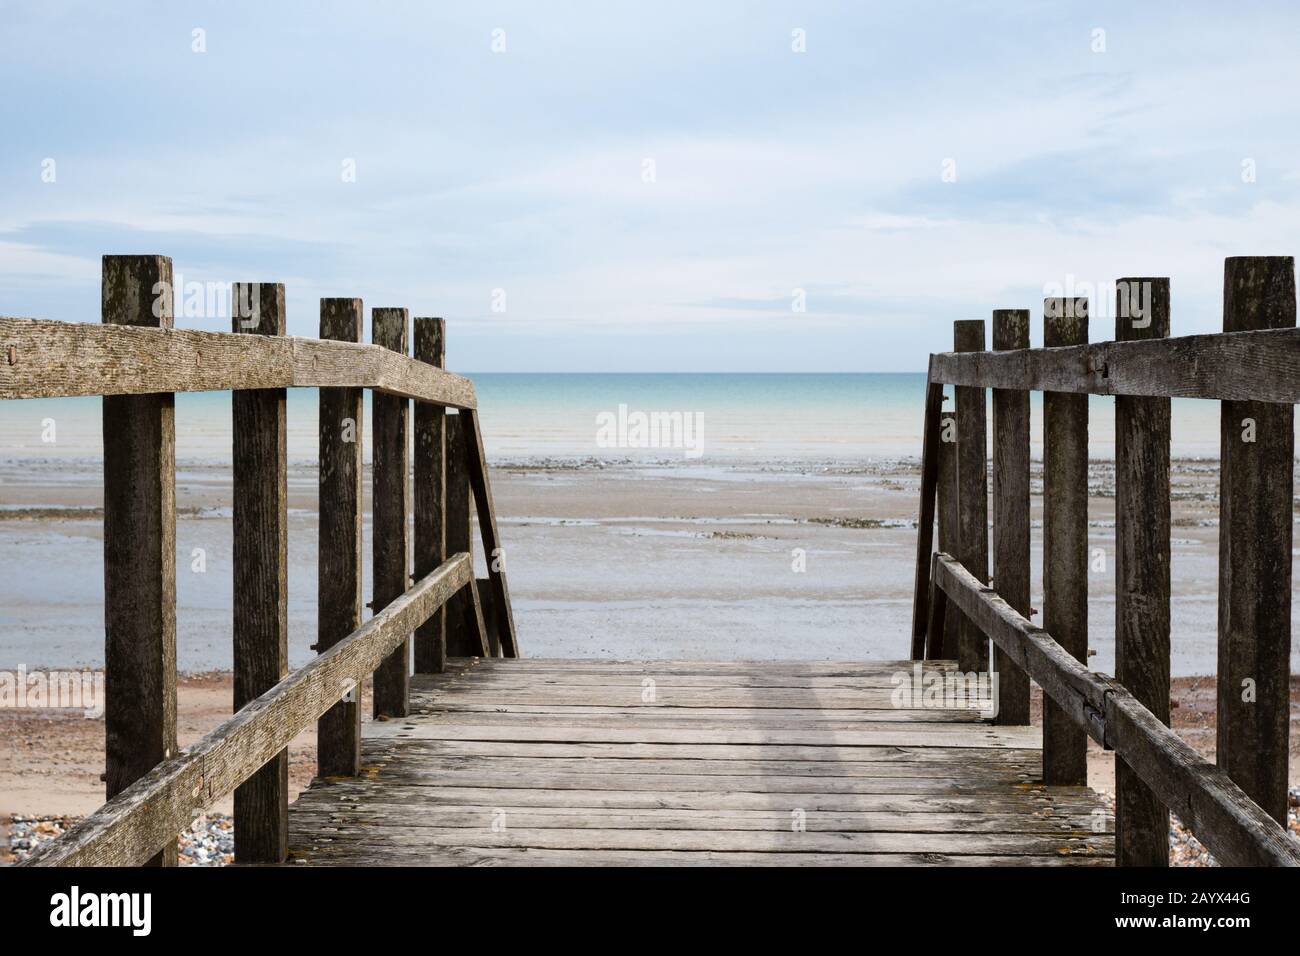 Tiro tomado desde el punto de vista de estar en un puente de madera, mirando hacia el horizonte en la playa en marea baja. Foto de stock